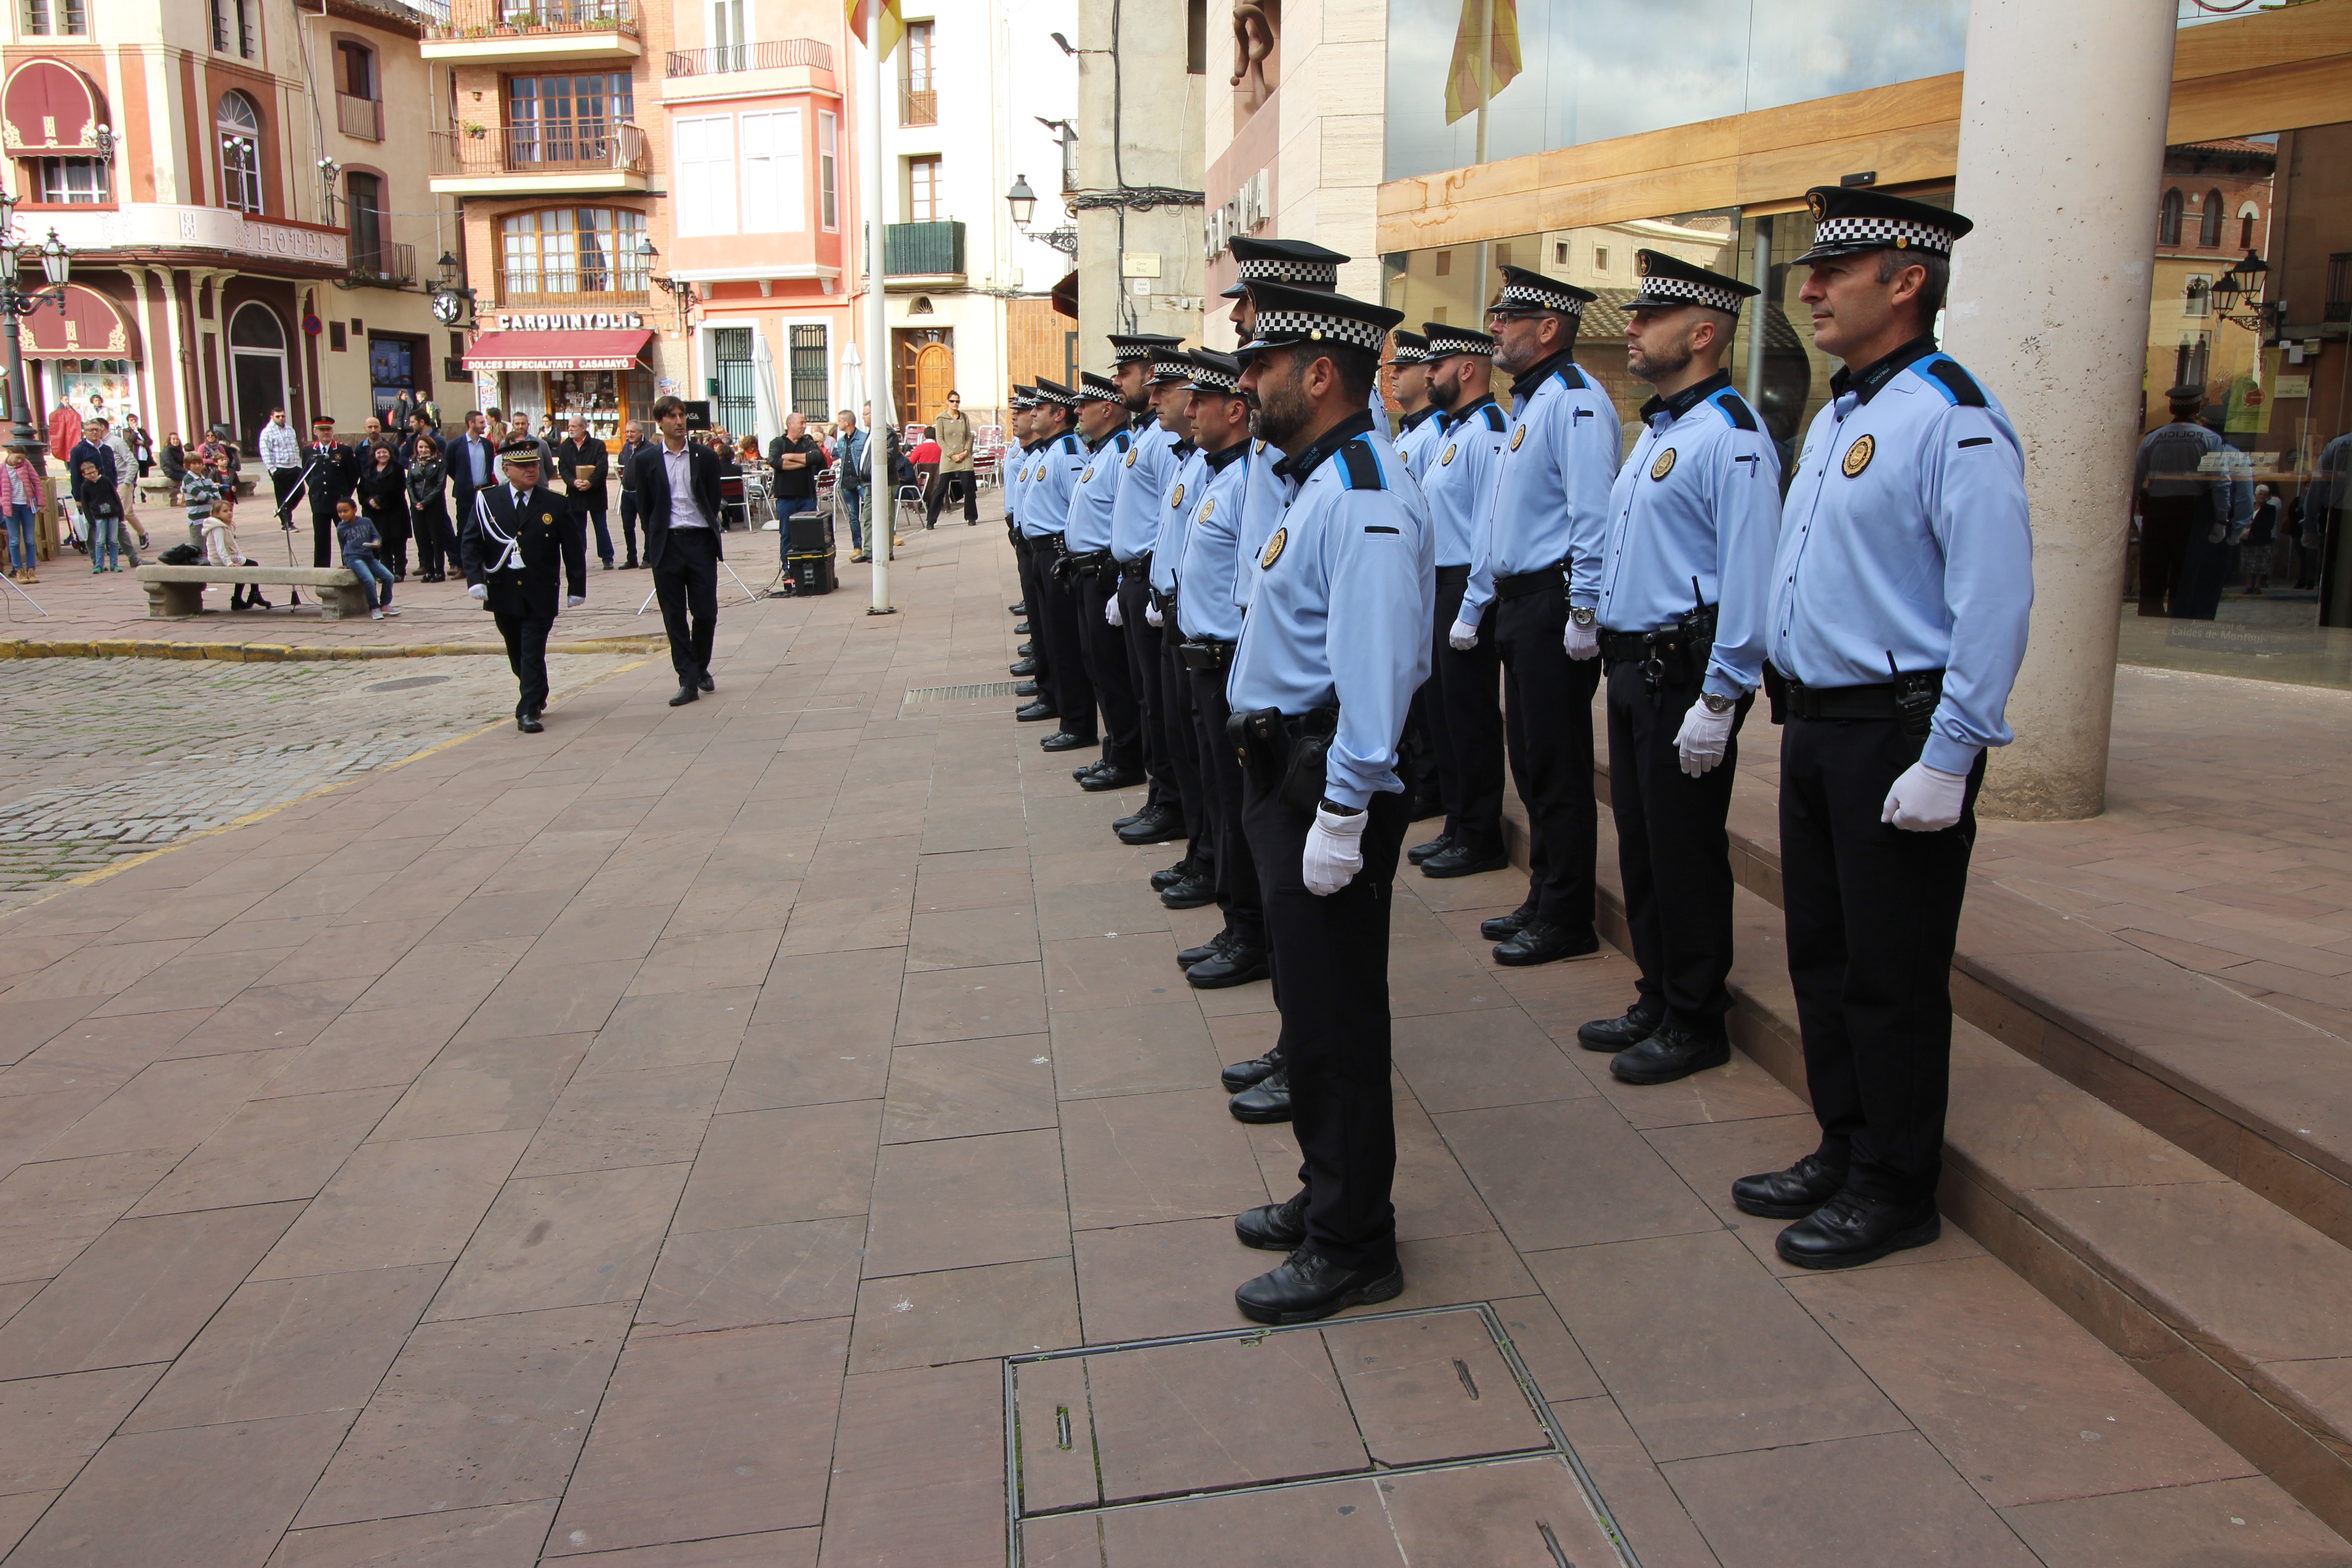 La formació dels membres del cos policial davant de l'ajuntament